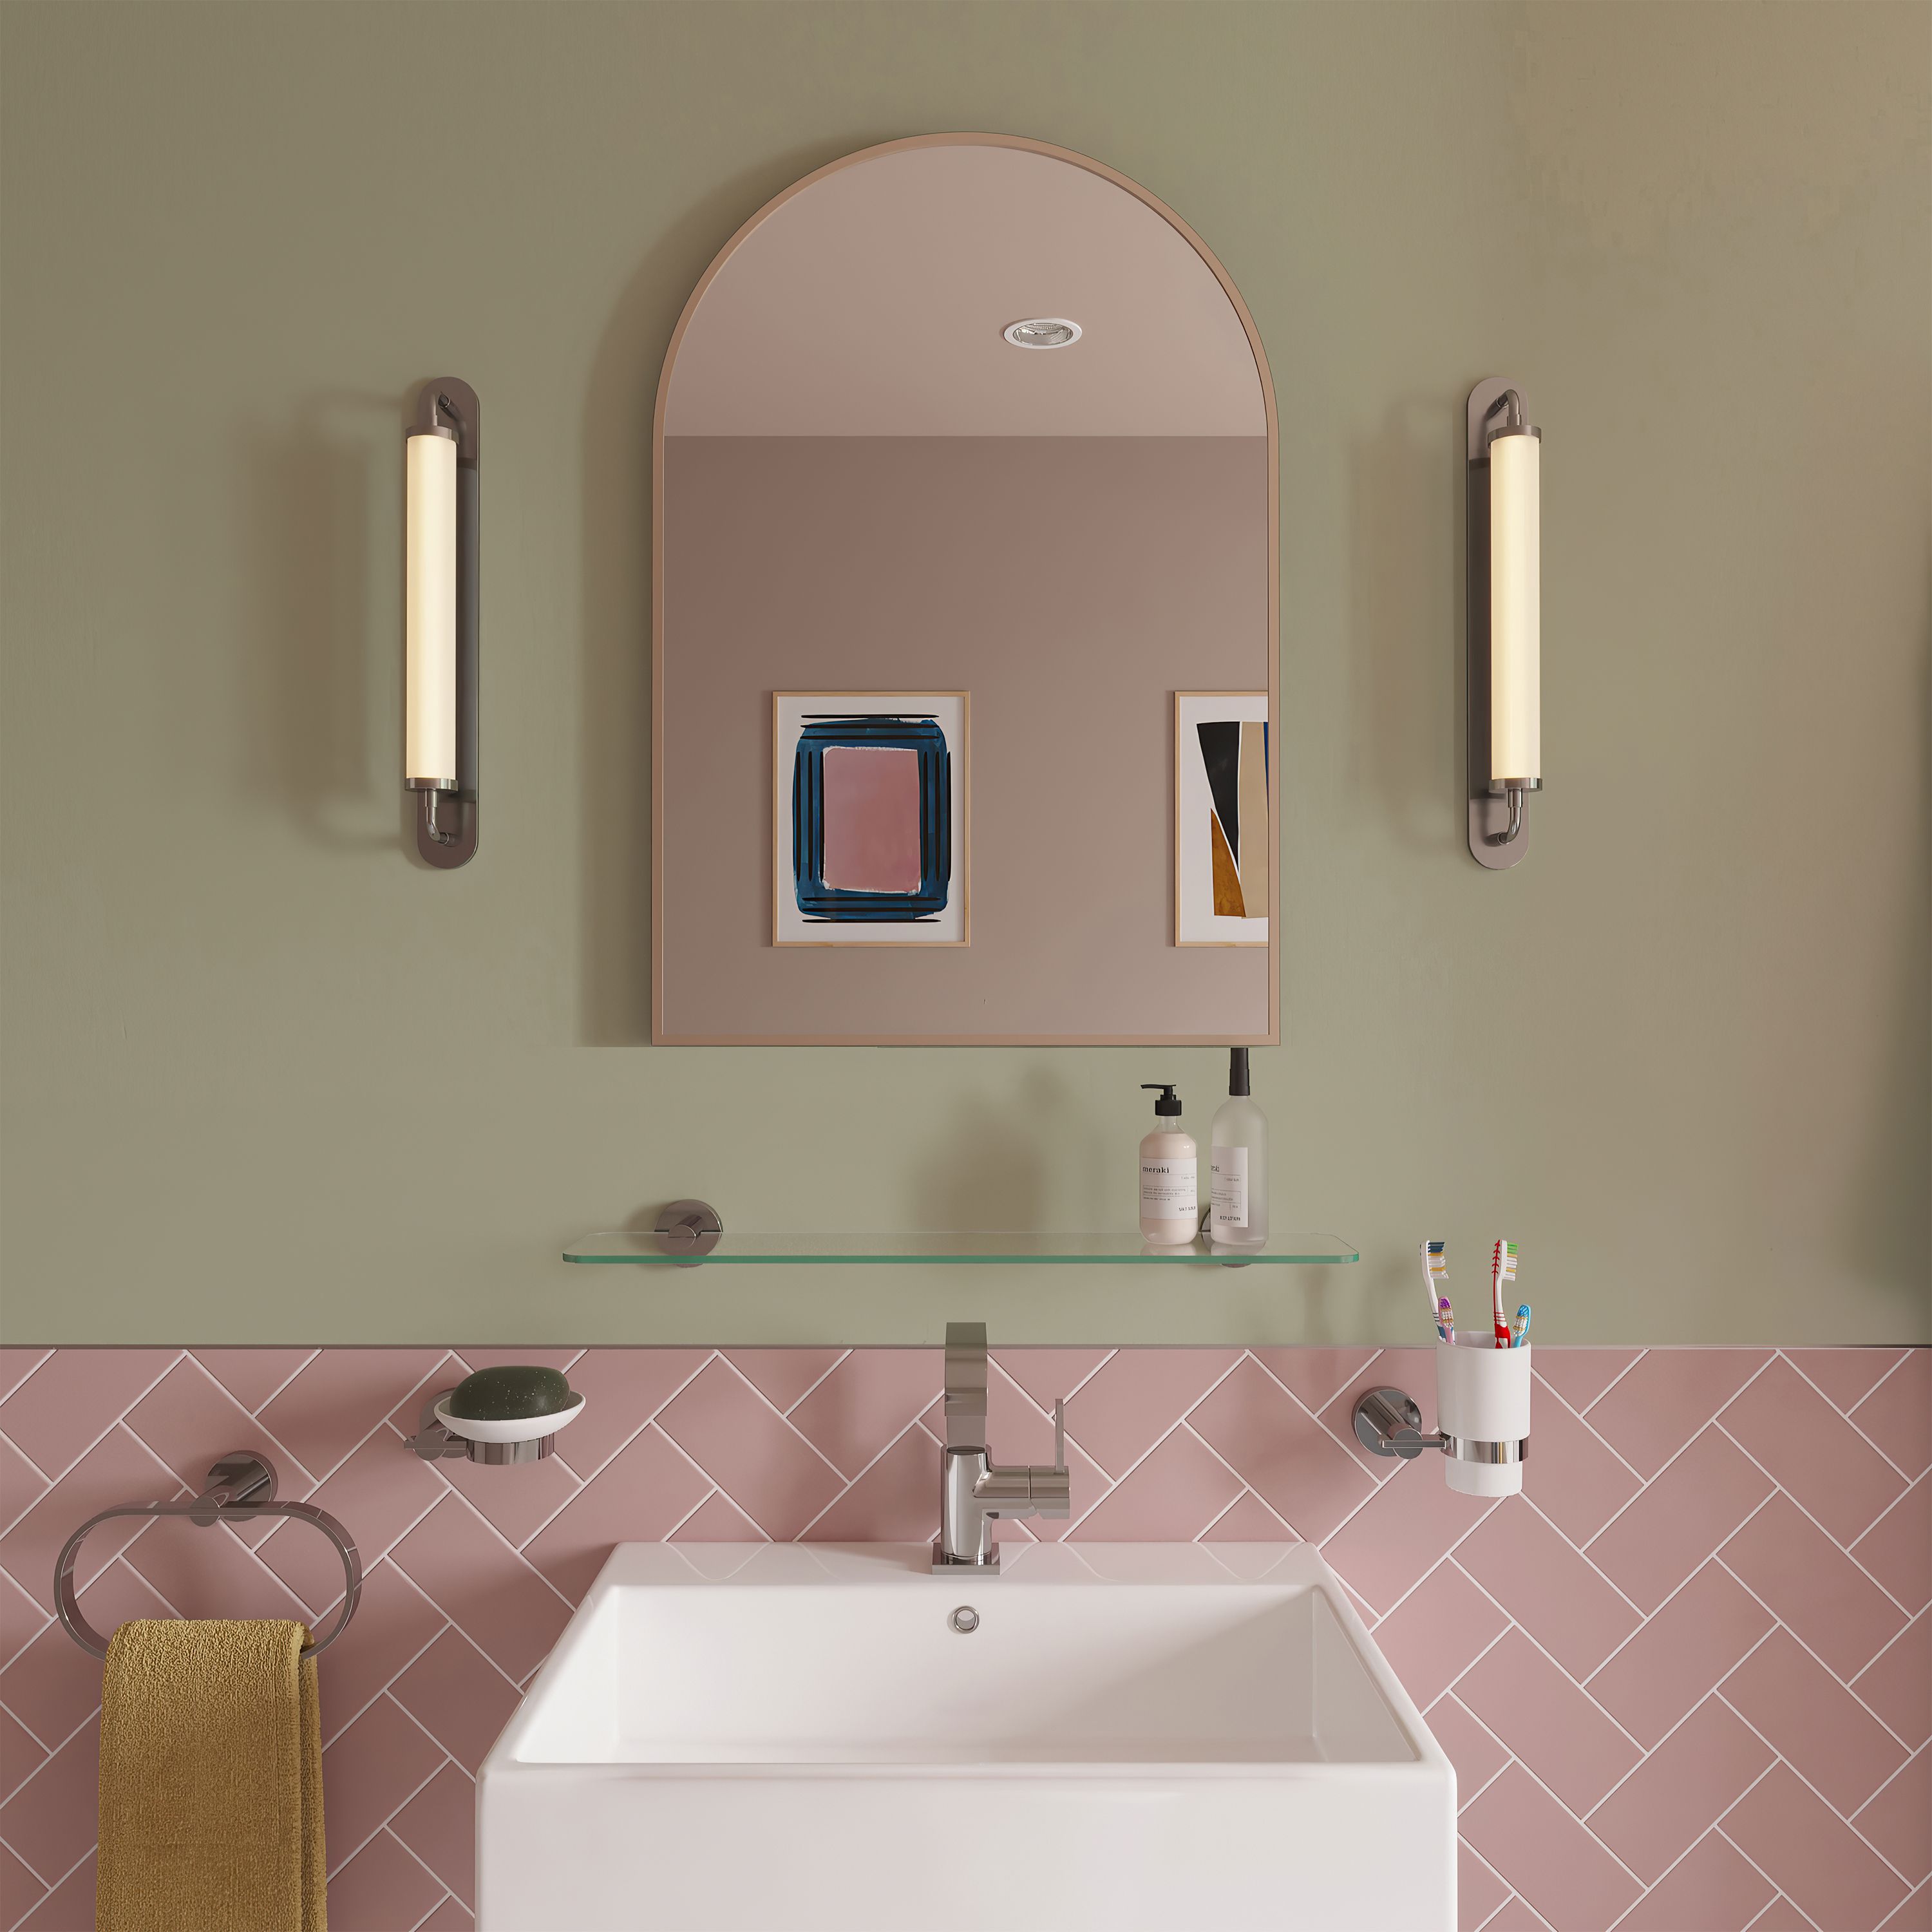 Croydex Matt Brass effect Arch Wall-mounted Bathroom Mirror (H)73cm (W)50cm